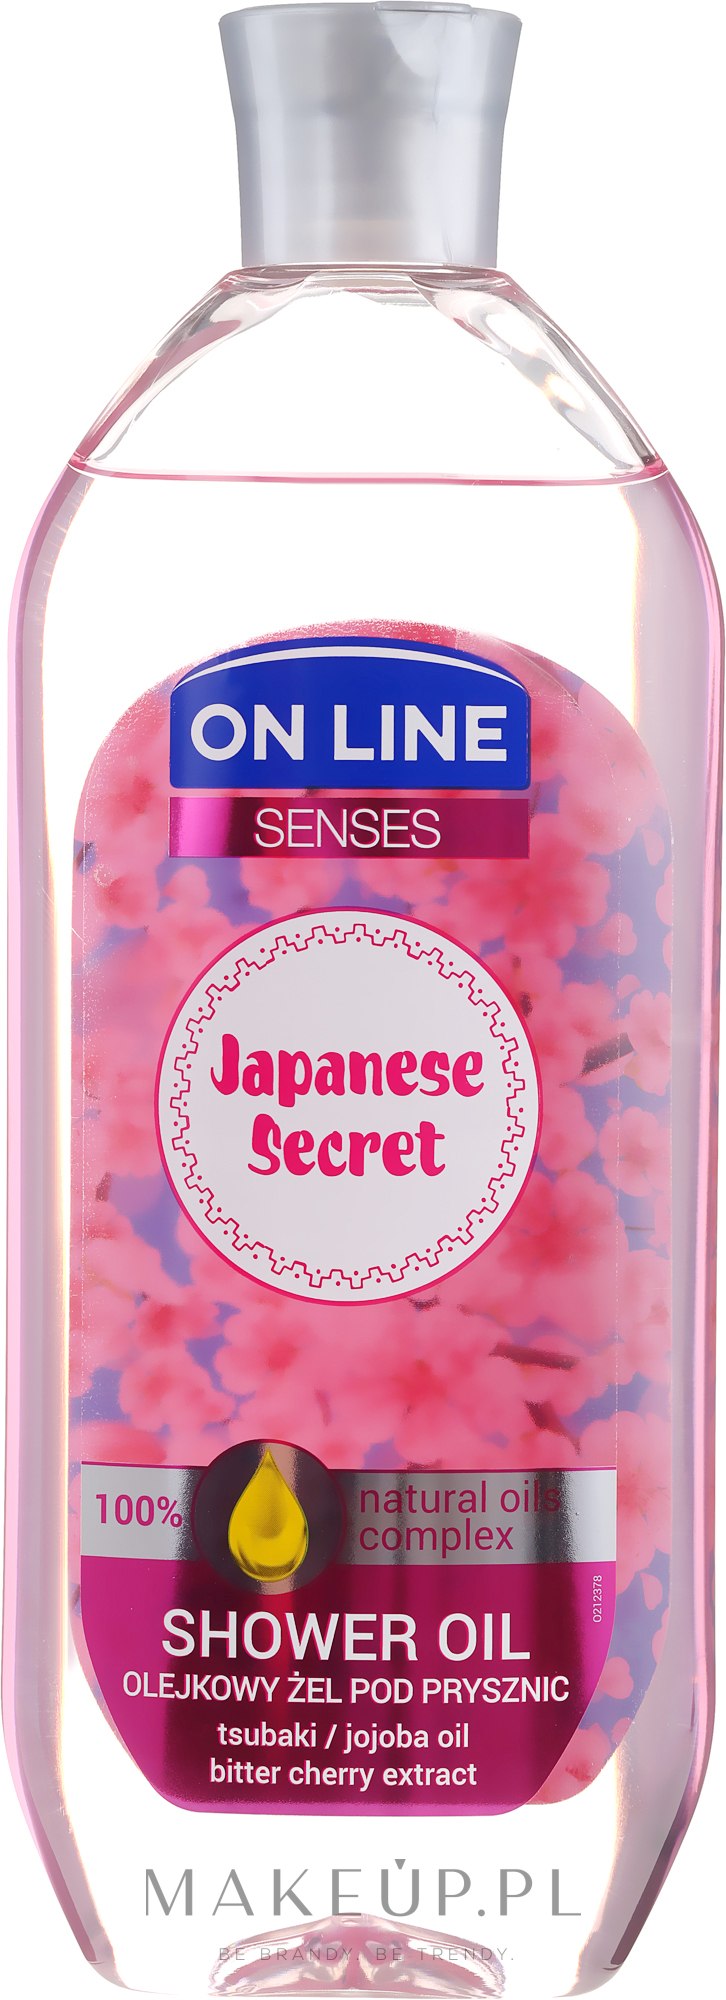 Olejkowy żel pod prysznic z olejami tsubaki i jojoba - On Line Senses Japanese Secret — Zdjęcie 500 ml